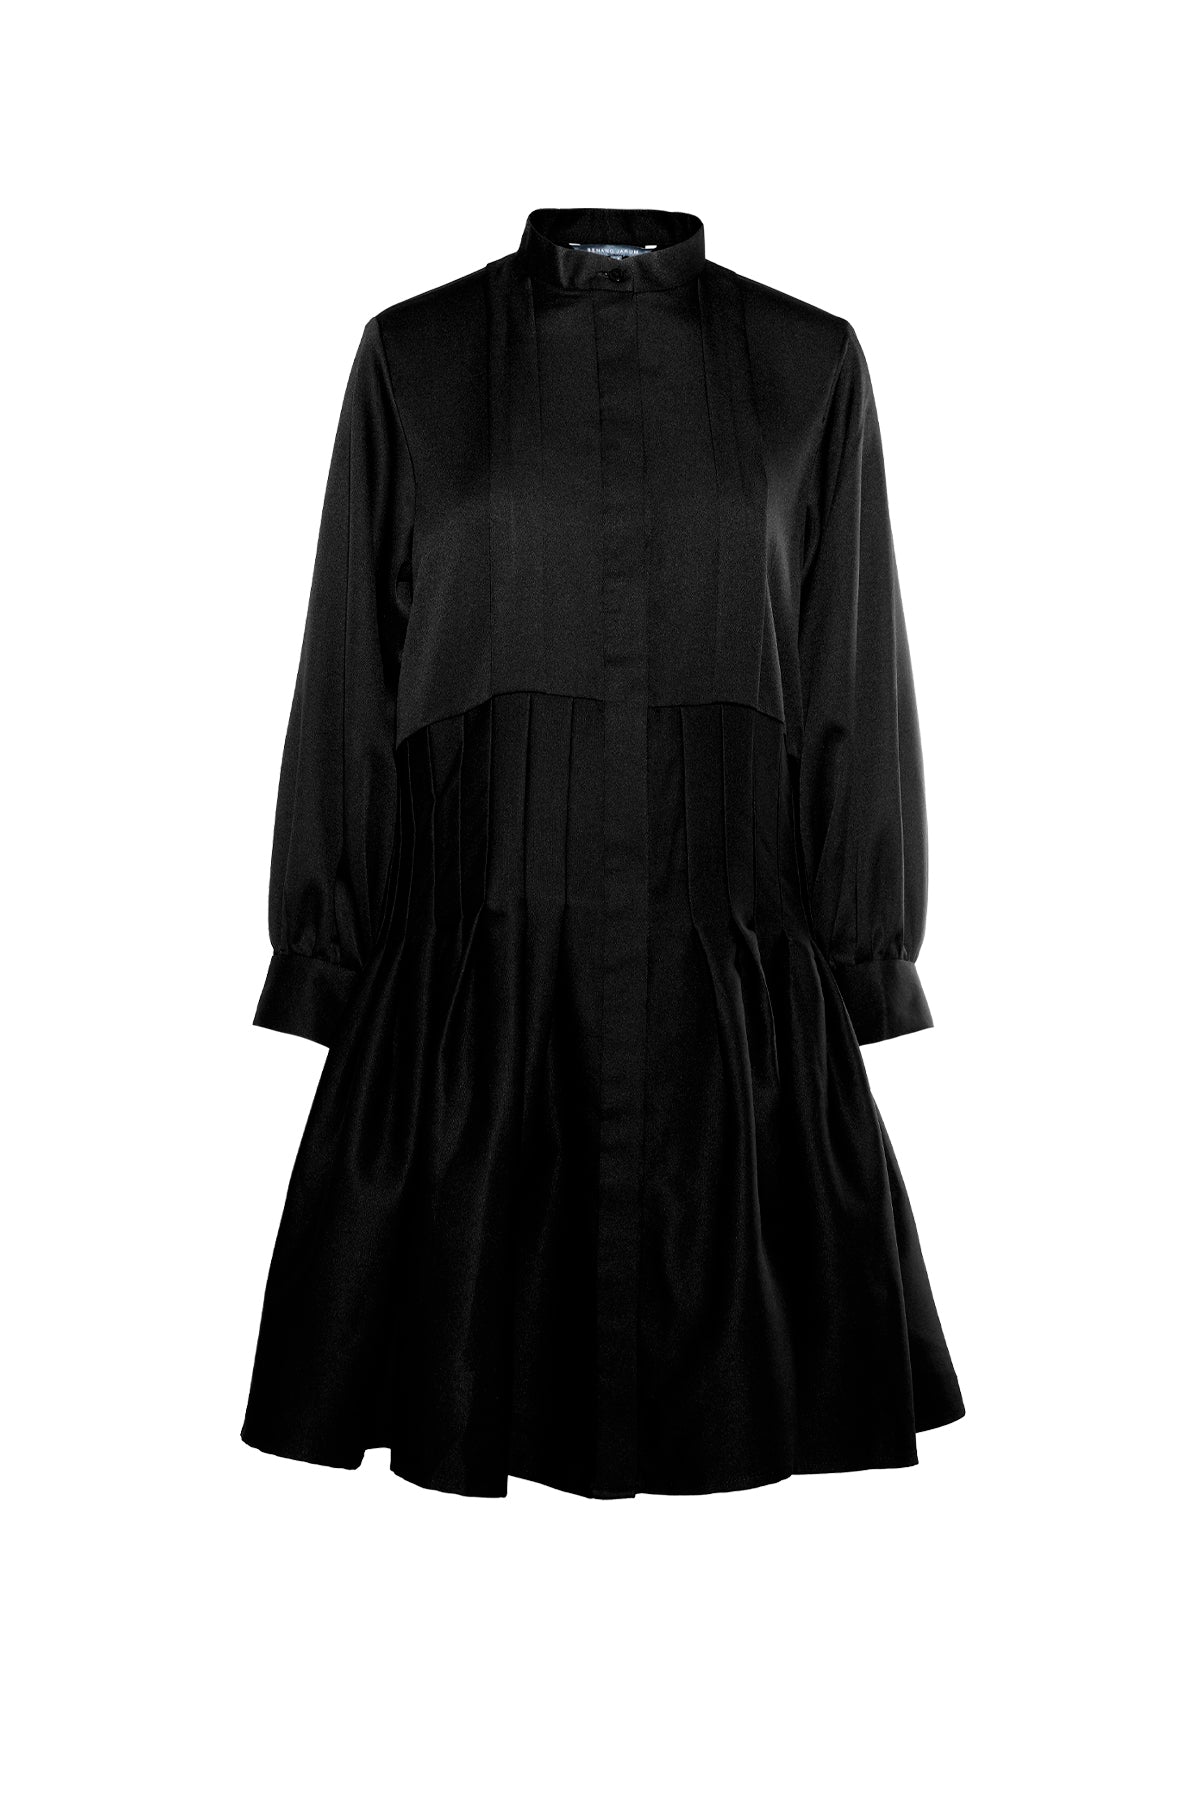 Arla Pleated Shirt - Black – Buttonscarves